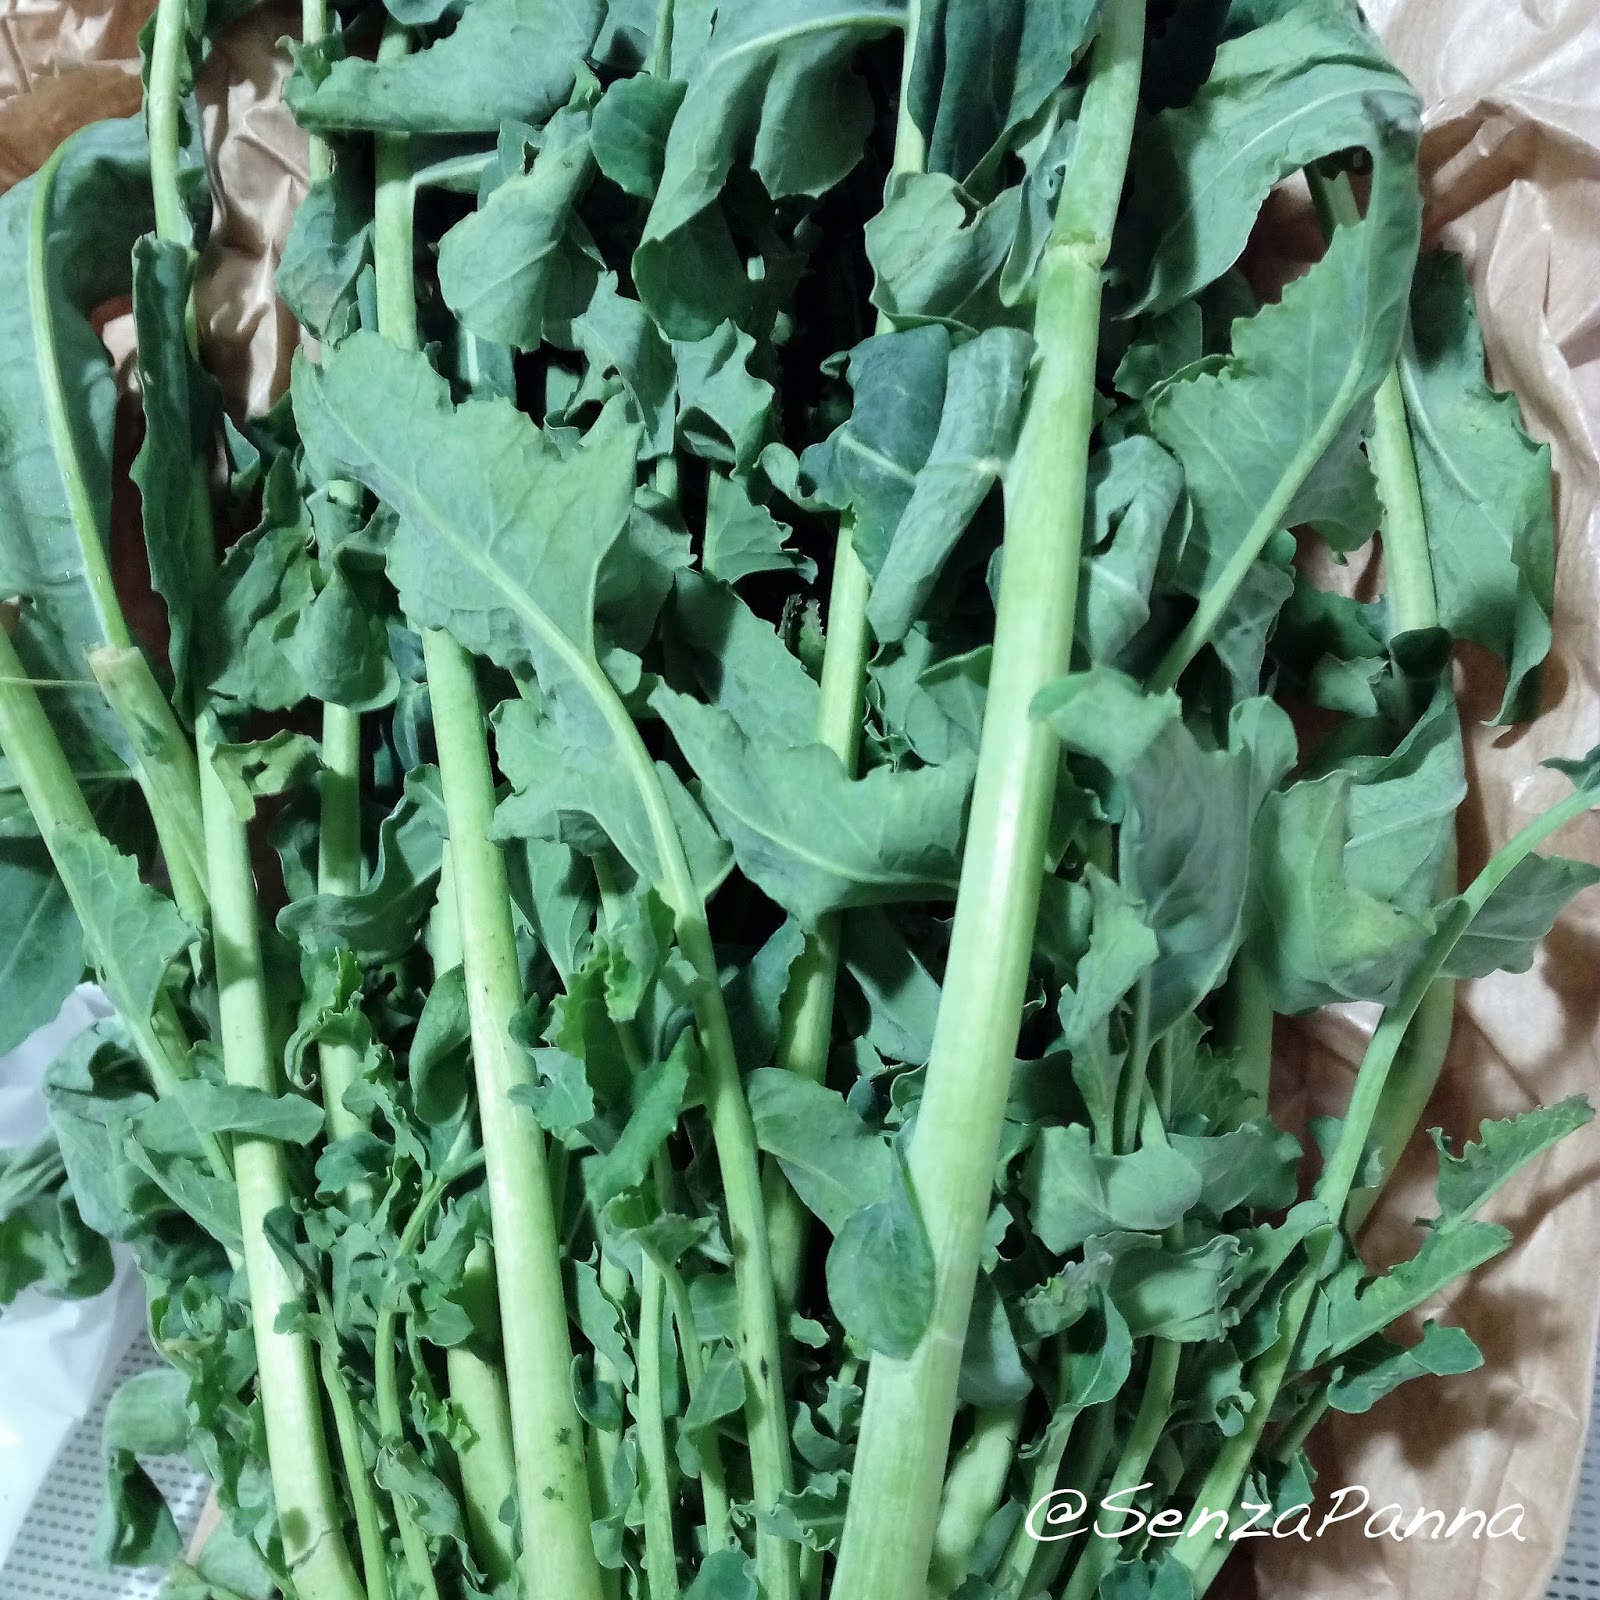 Senzapanna Mezze Maniche Con Broccolo Fiolaro Come Pulirlo E Come Utilizzarlo In Cucina